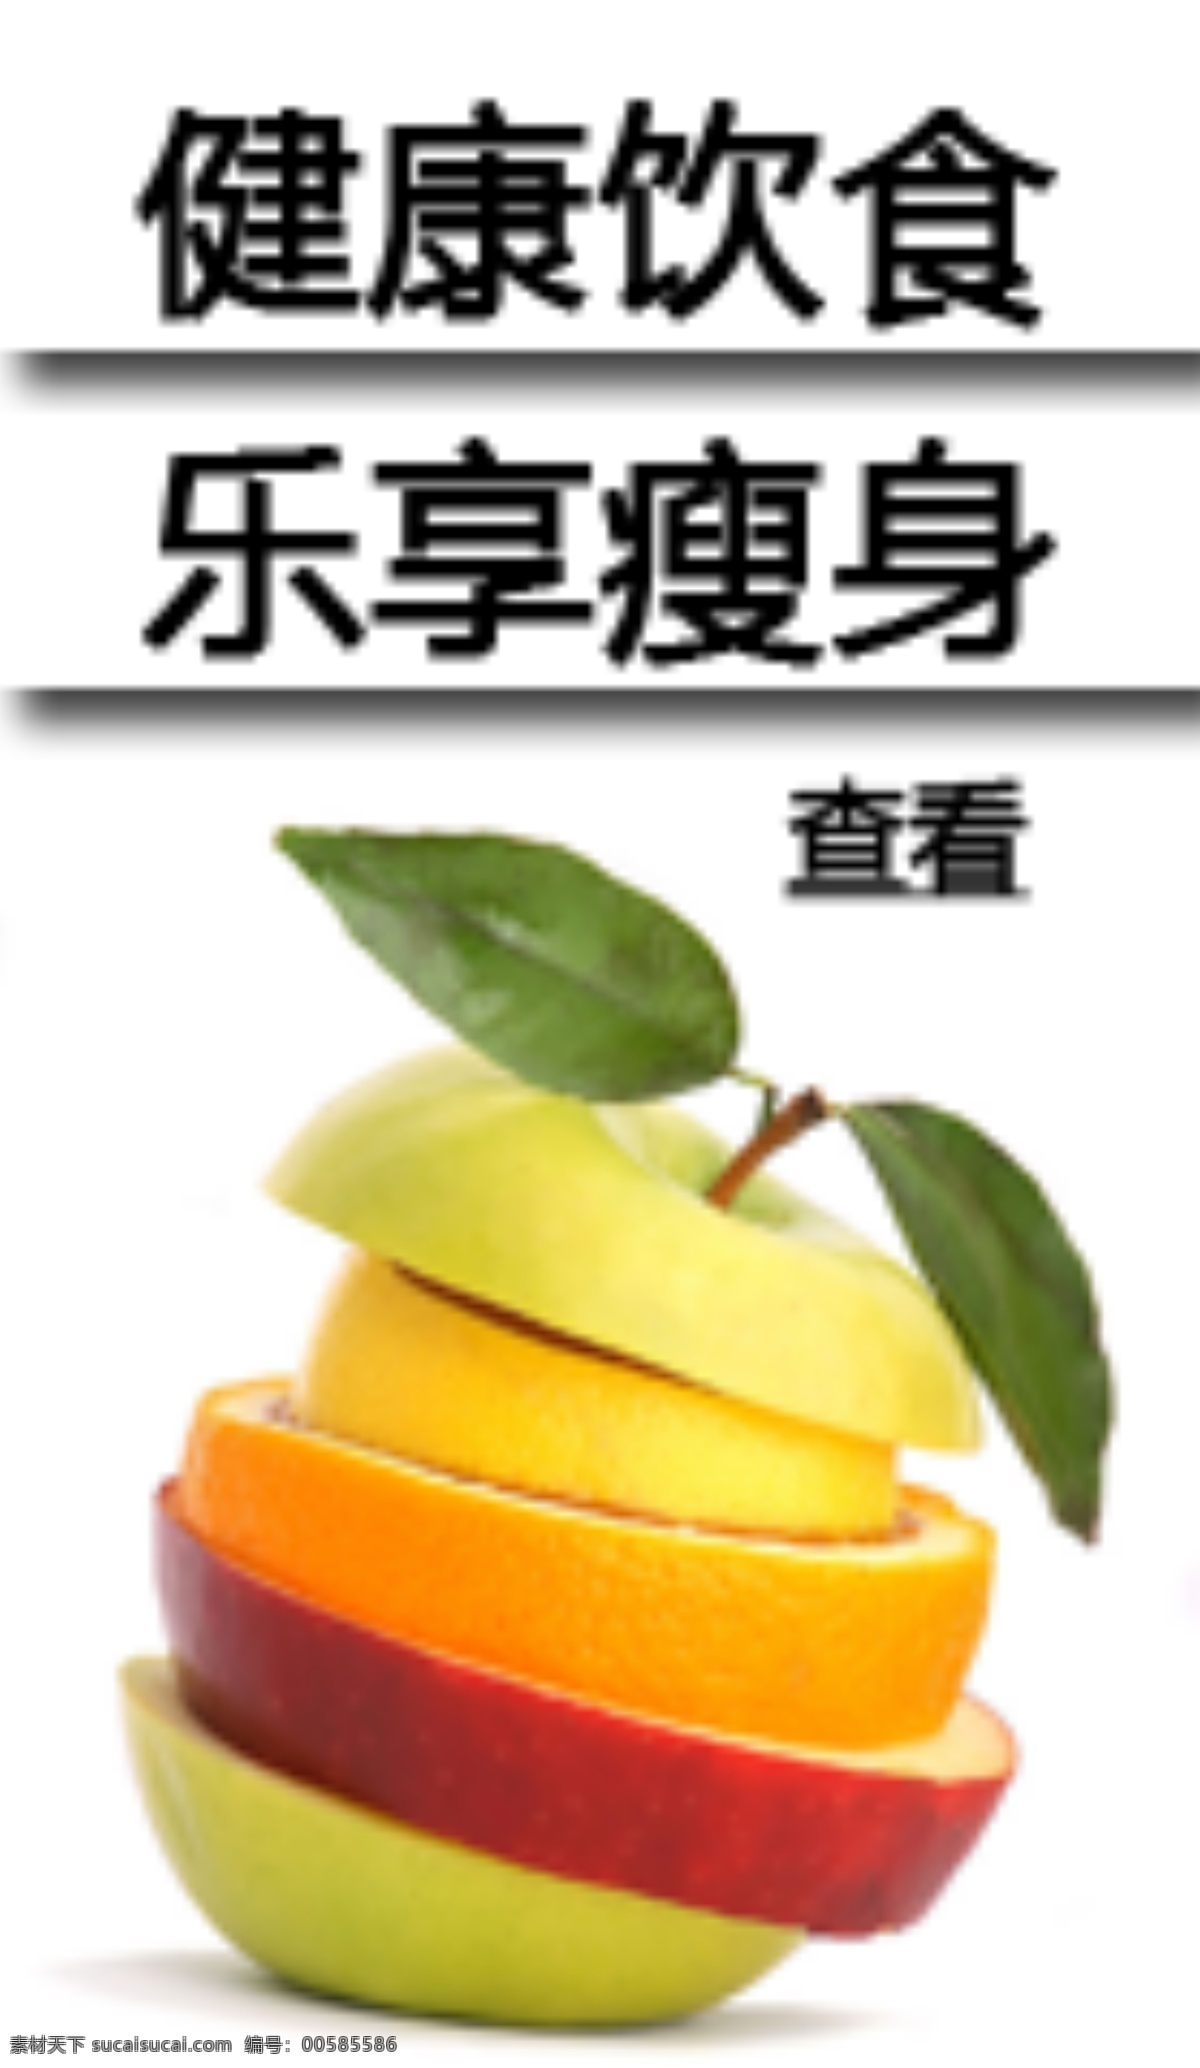 减肥 水果 白底 白色 阴影 橘子 橙子 苹果 梨子 叶子 网页小广告 中文模版 网页模板 源文件